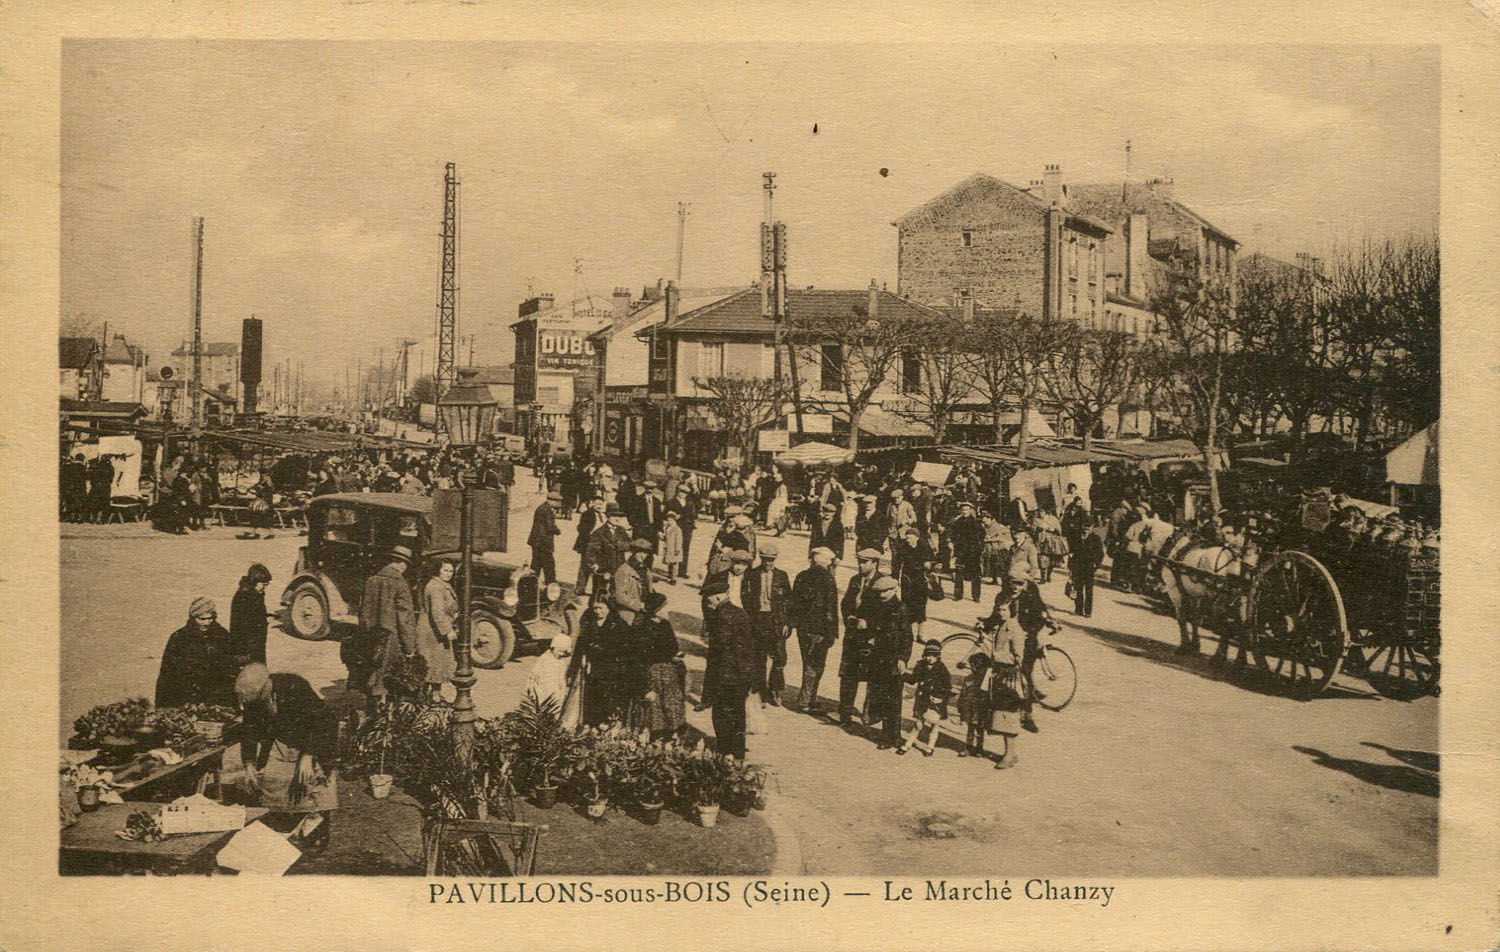 Pavillons-sous-Bois (Seine) - Le Marché Chanzy